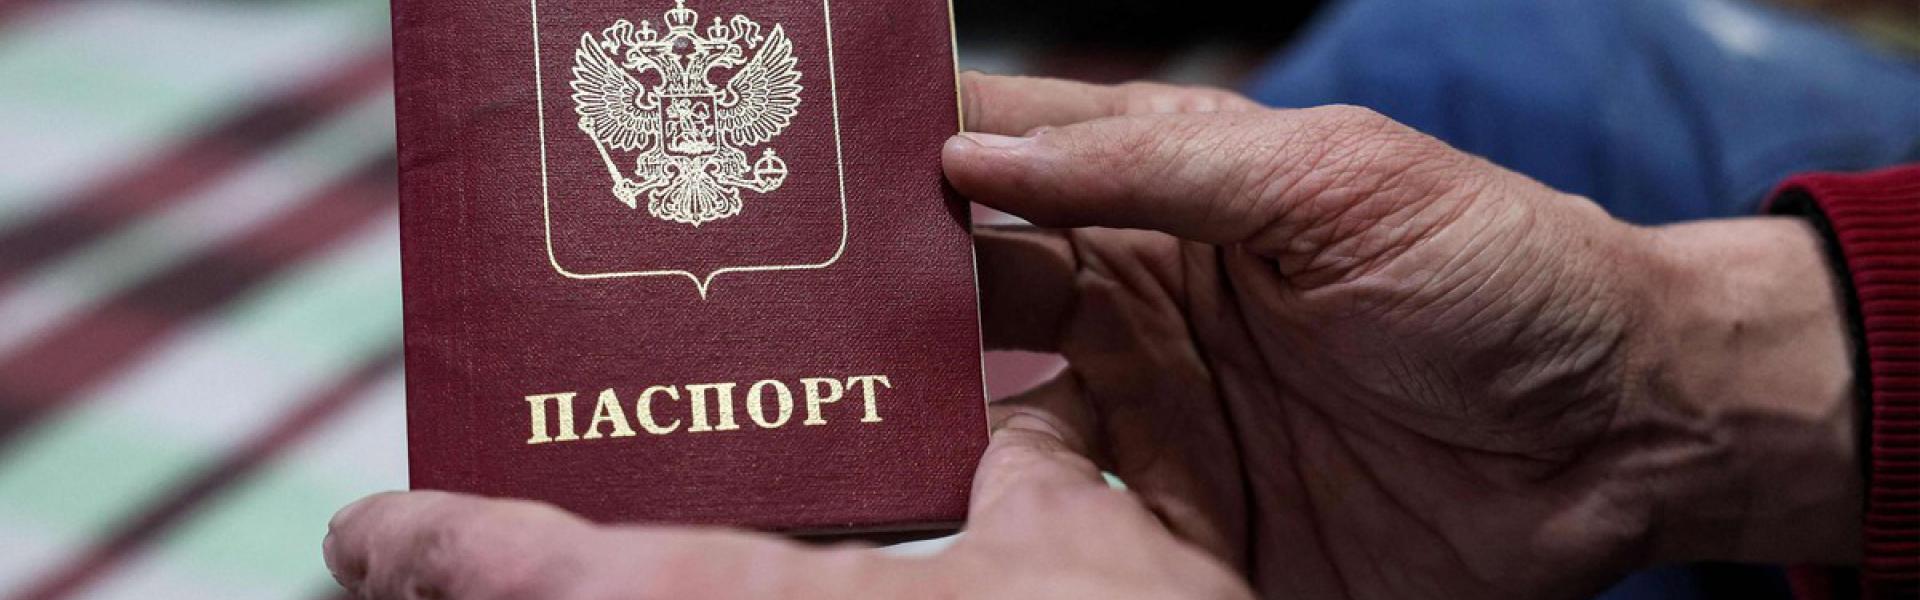 الحصول على جواز السفر الروسي أحد الإغراءات لتجنيد المقاتلين